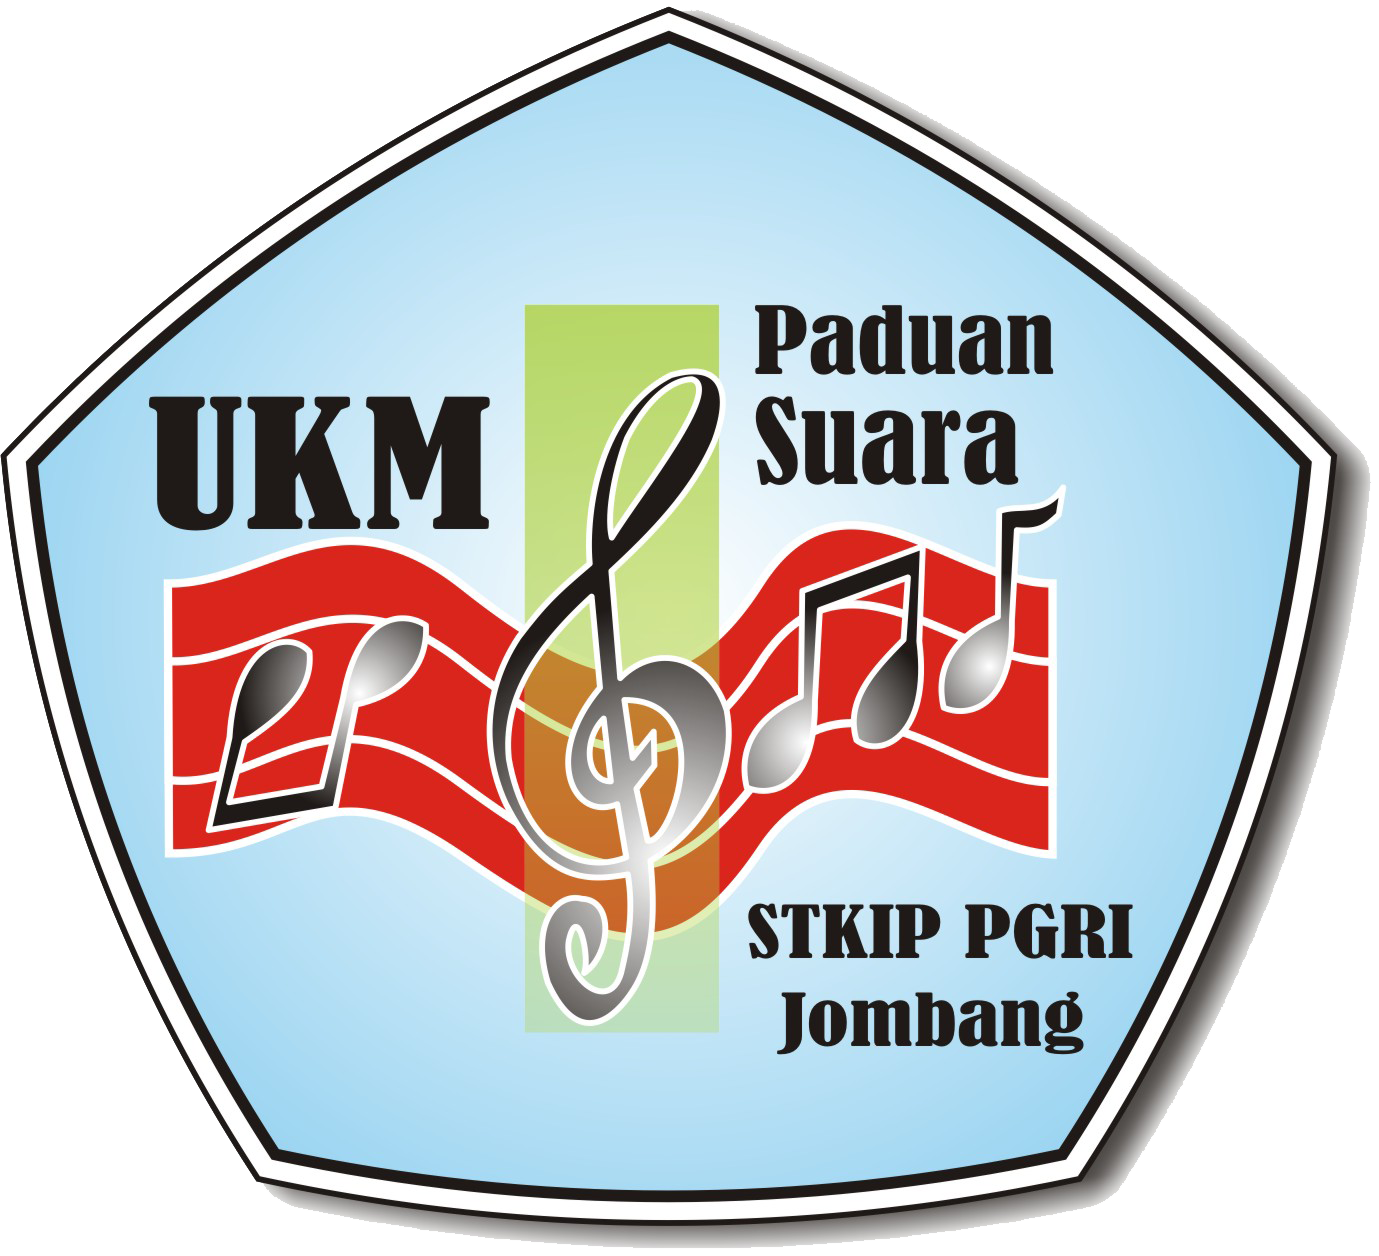 UKM_Paduan_Suara_STKIP.png